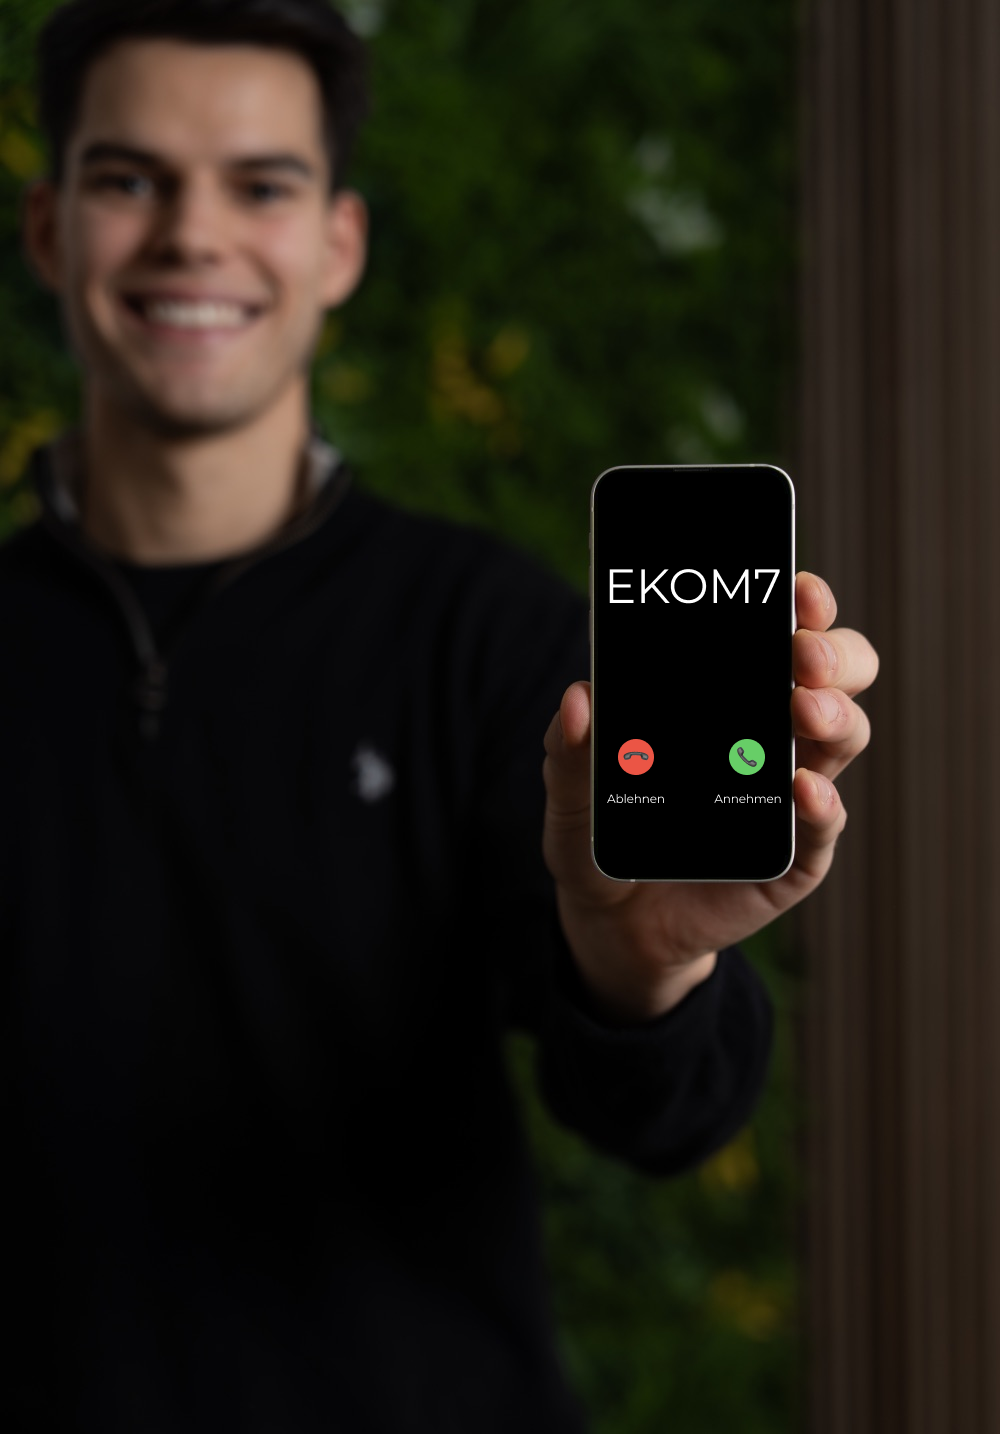 Gründer von EKOM7 Niclas Klopfer hält Handy in der Hand, während "EKOM7" anruft.